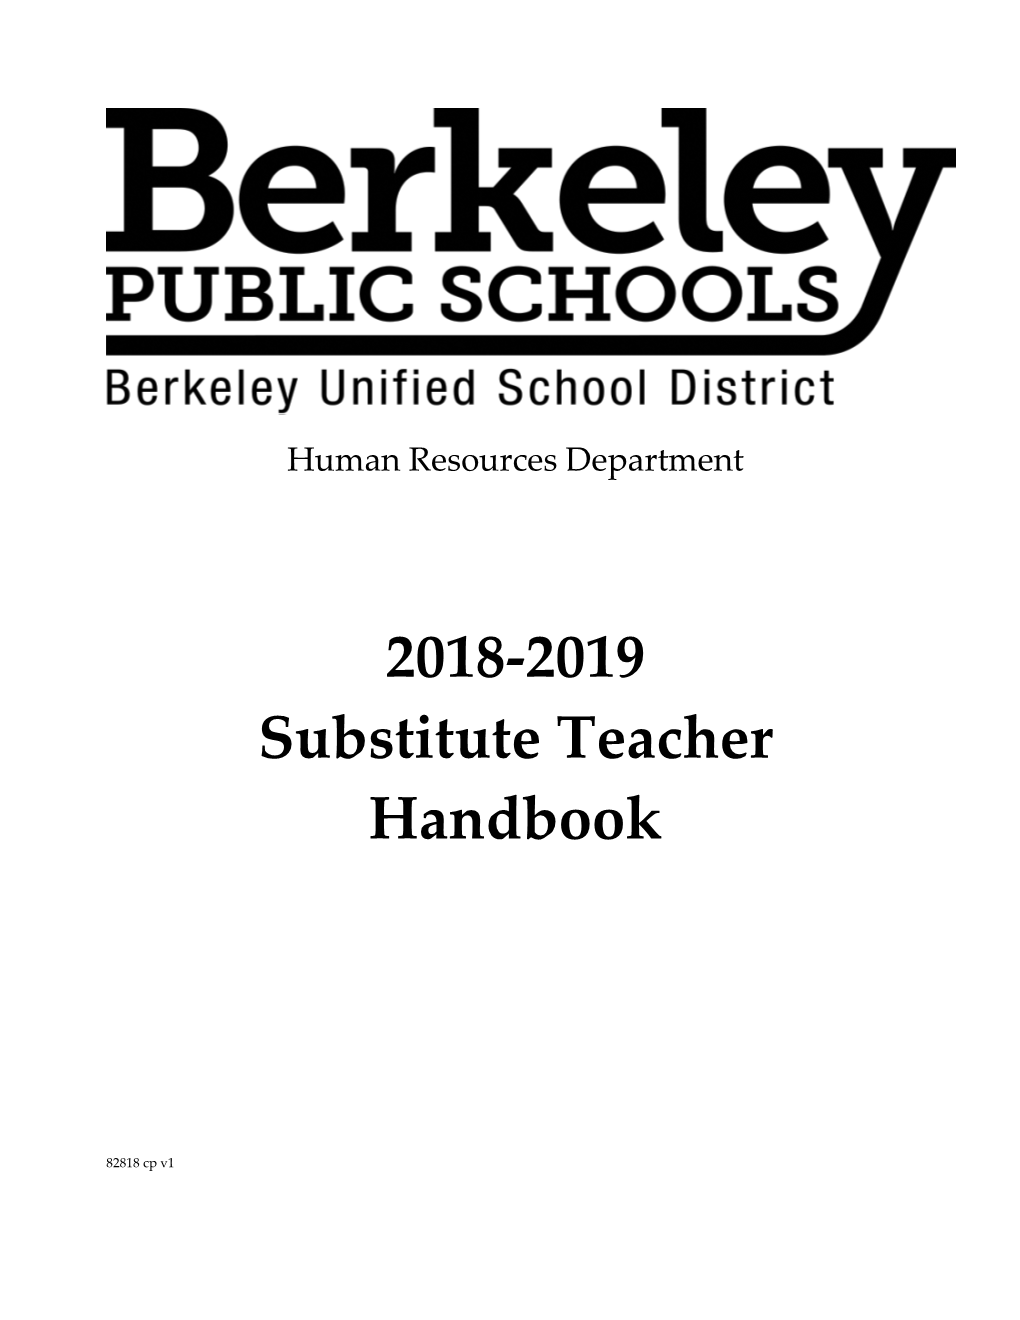 2018-2019 Substitute Teacher Handbook